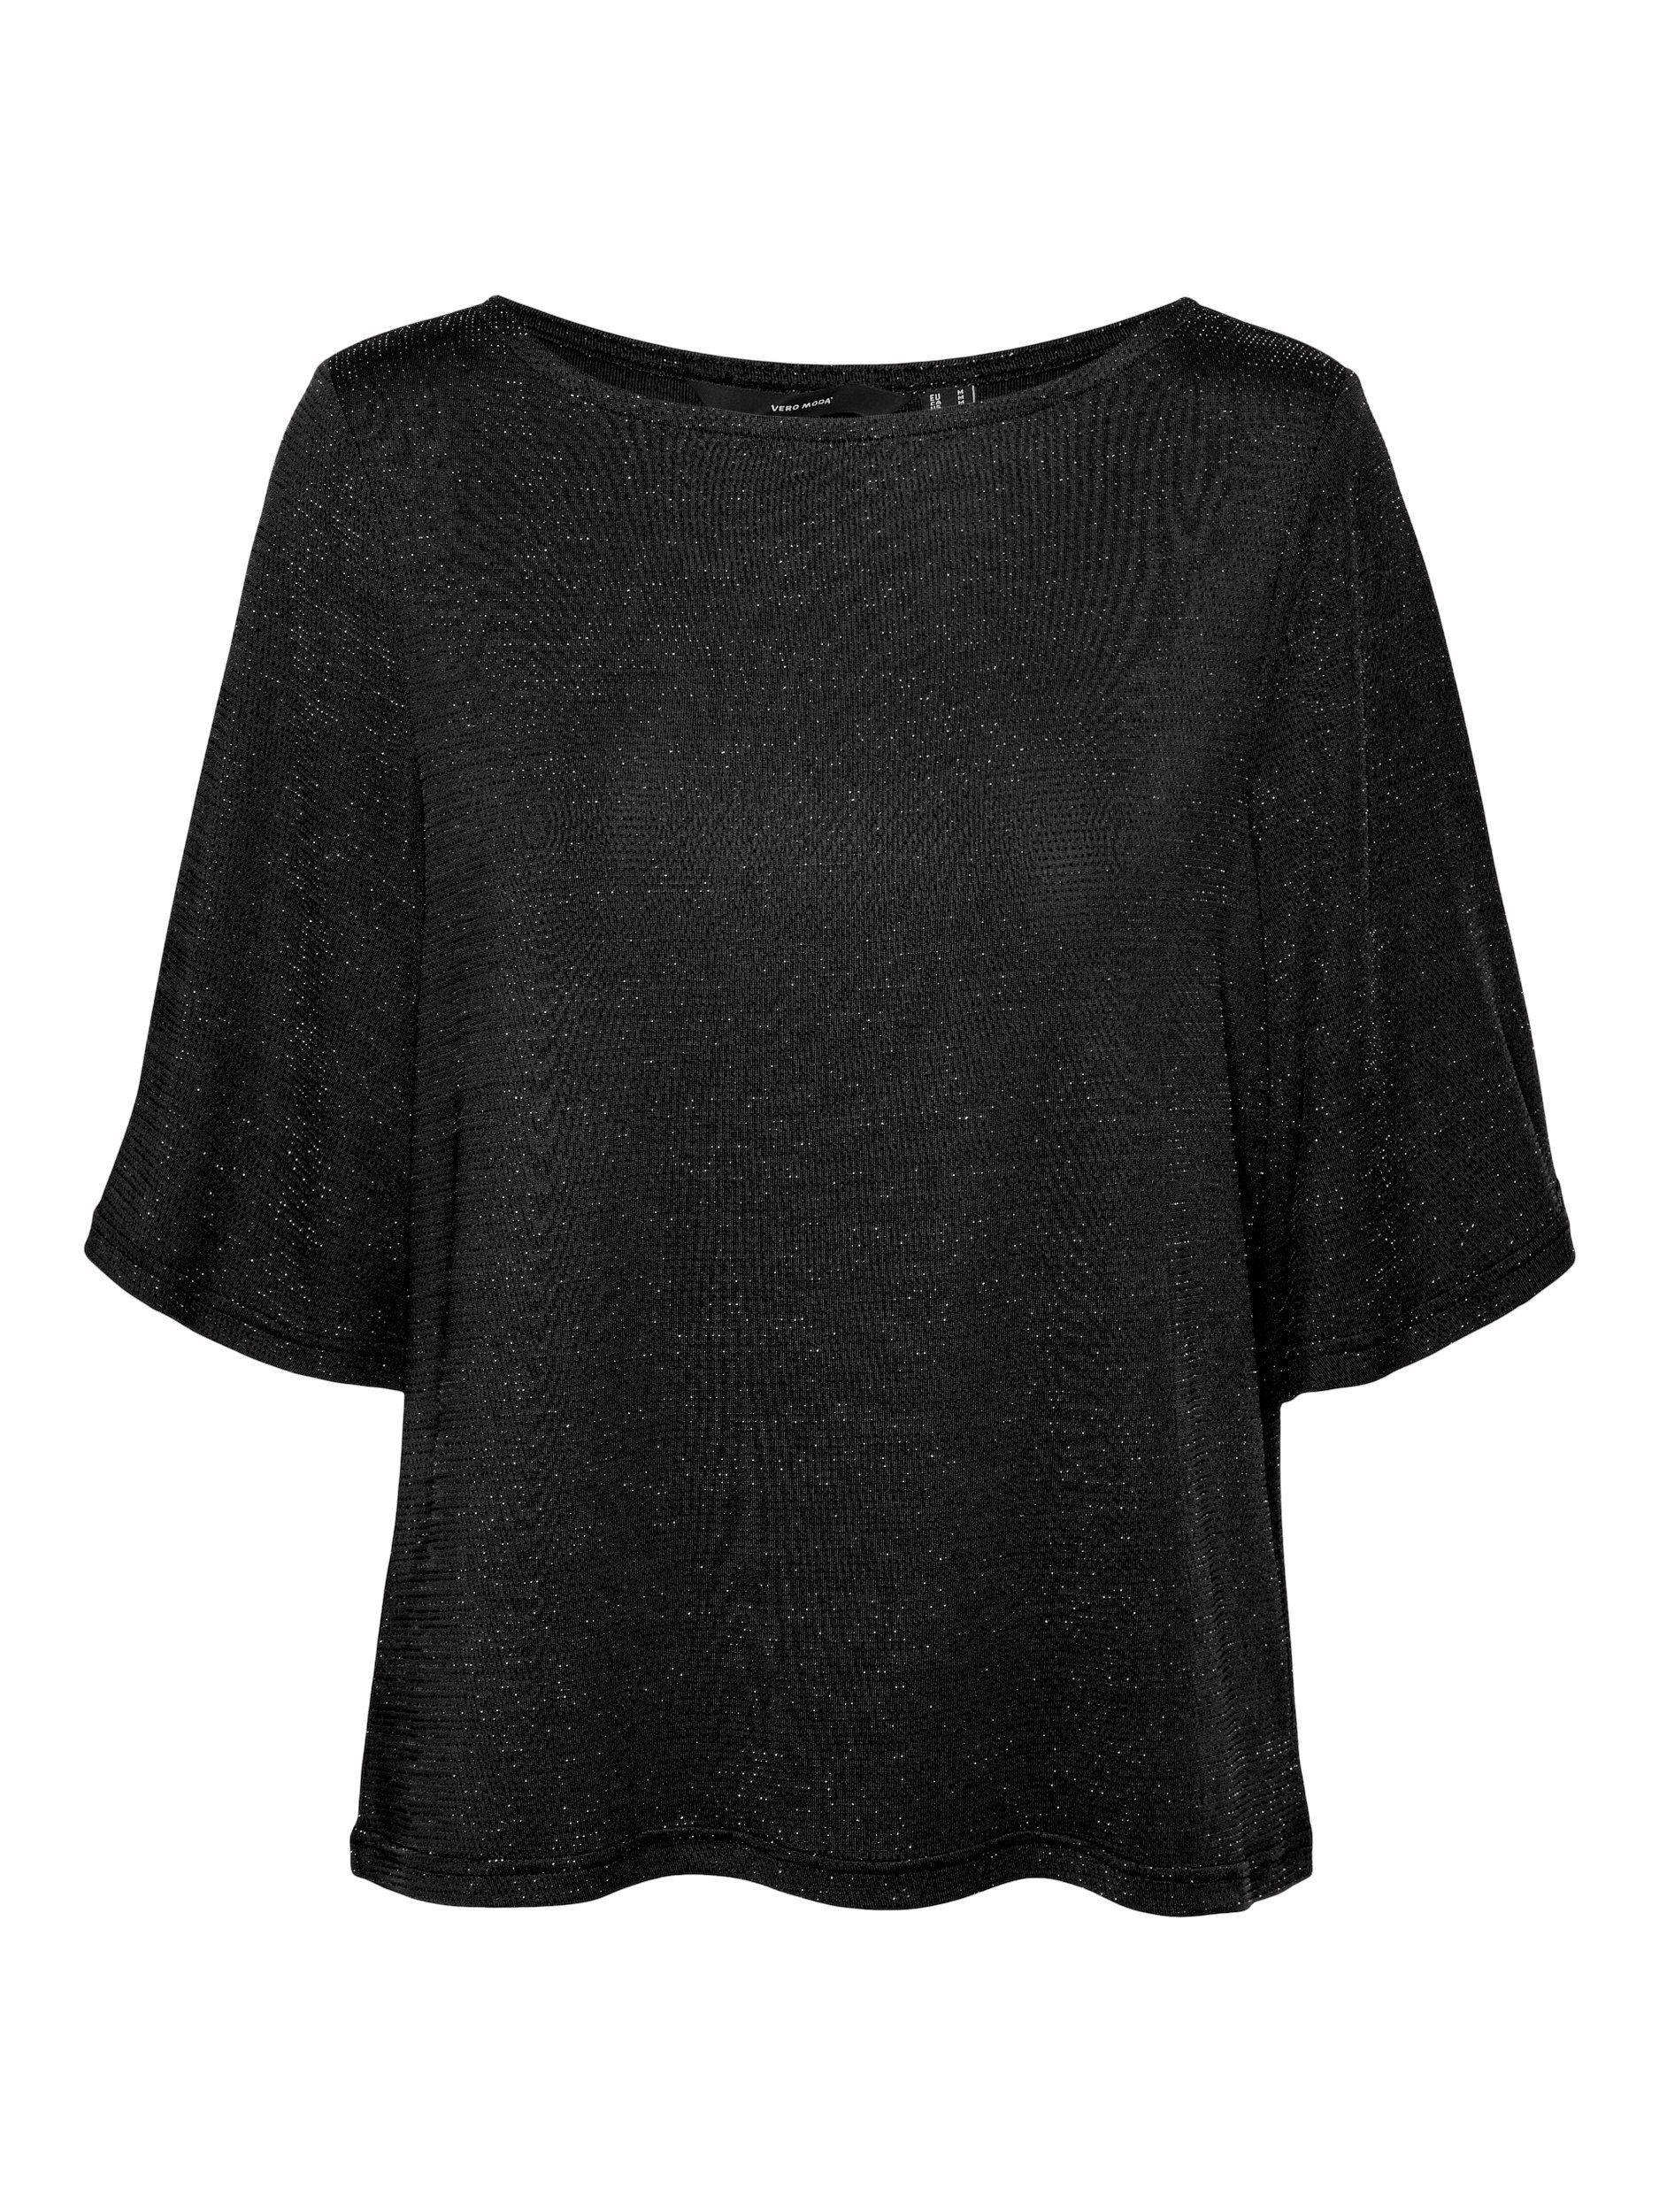 am beliebtesten Vero Moda Shirts 3/4 OTTO online für Arm Damen kaufen 